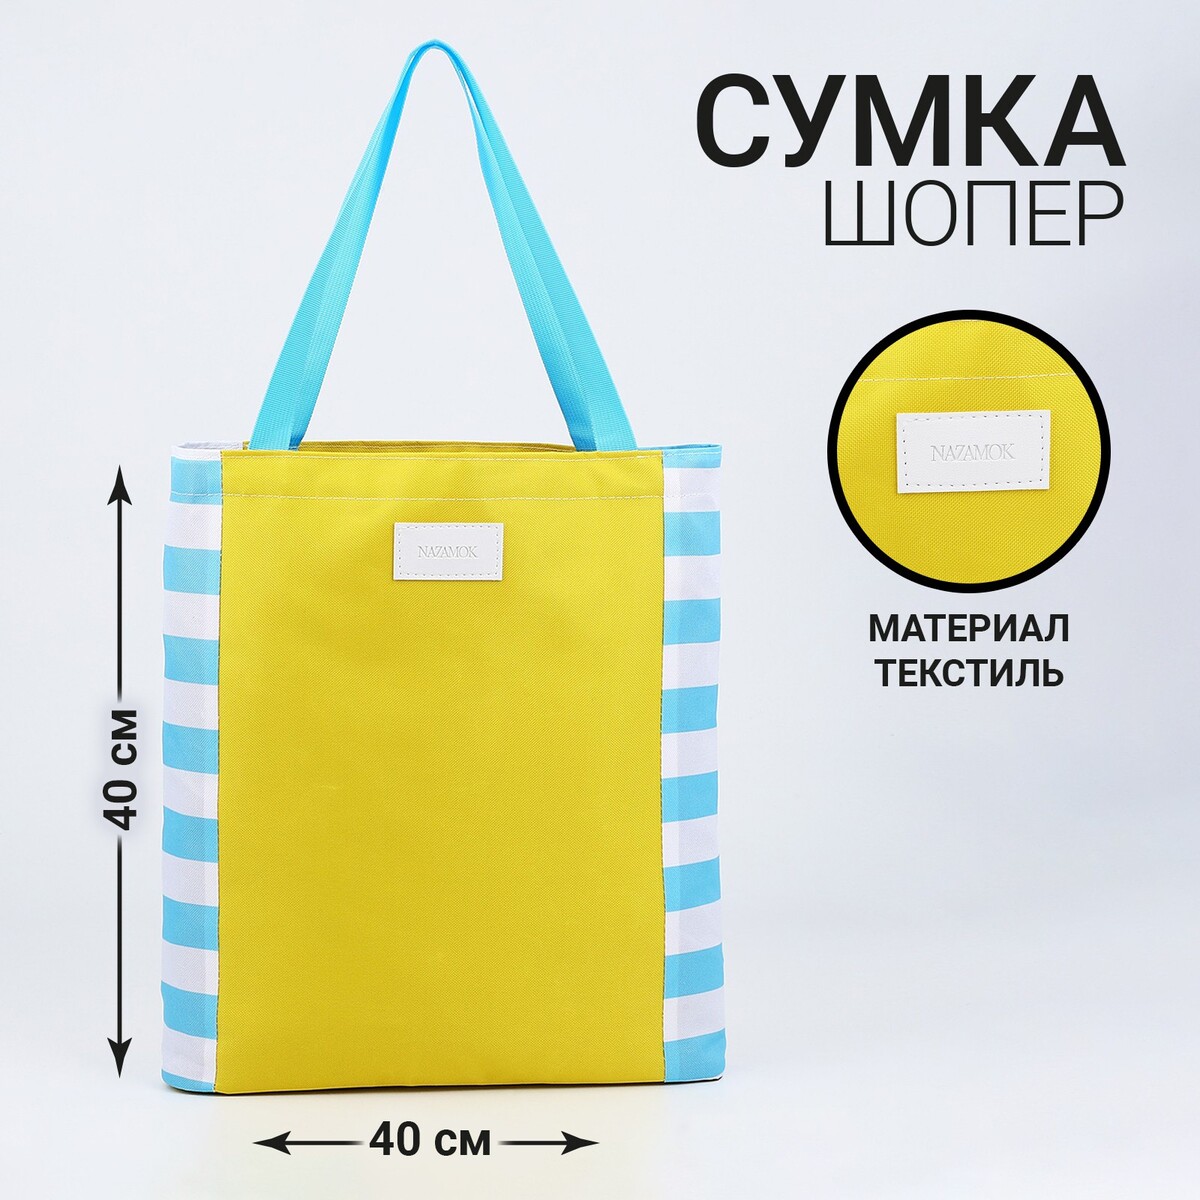 Сумка женская пляжная nazamok, 40х40см, желтый цвет сумка шопер пляжная сеточная 41х32х26 см